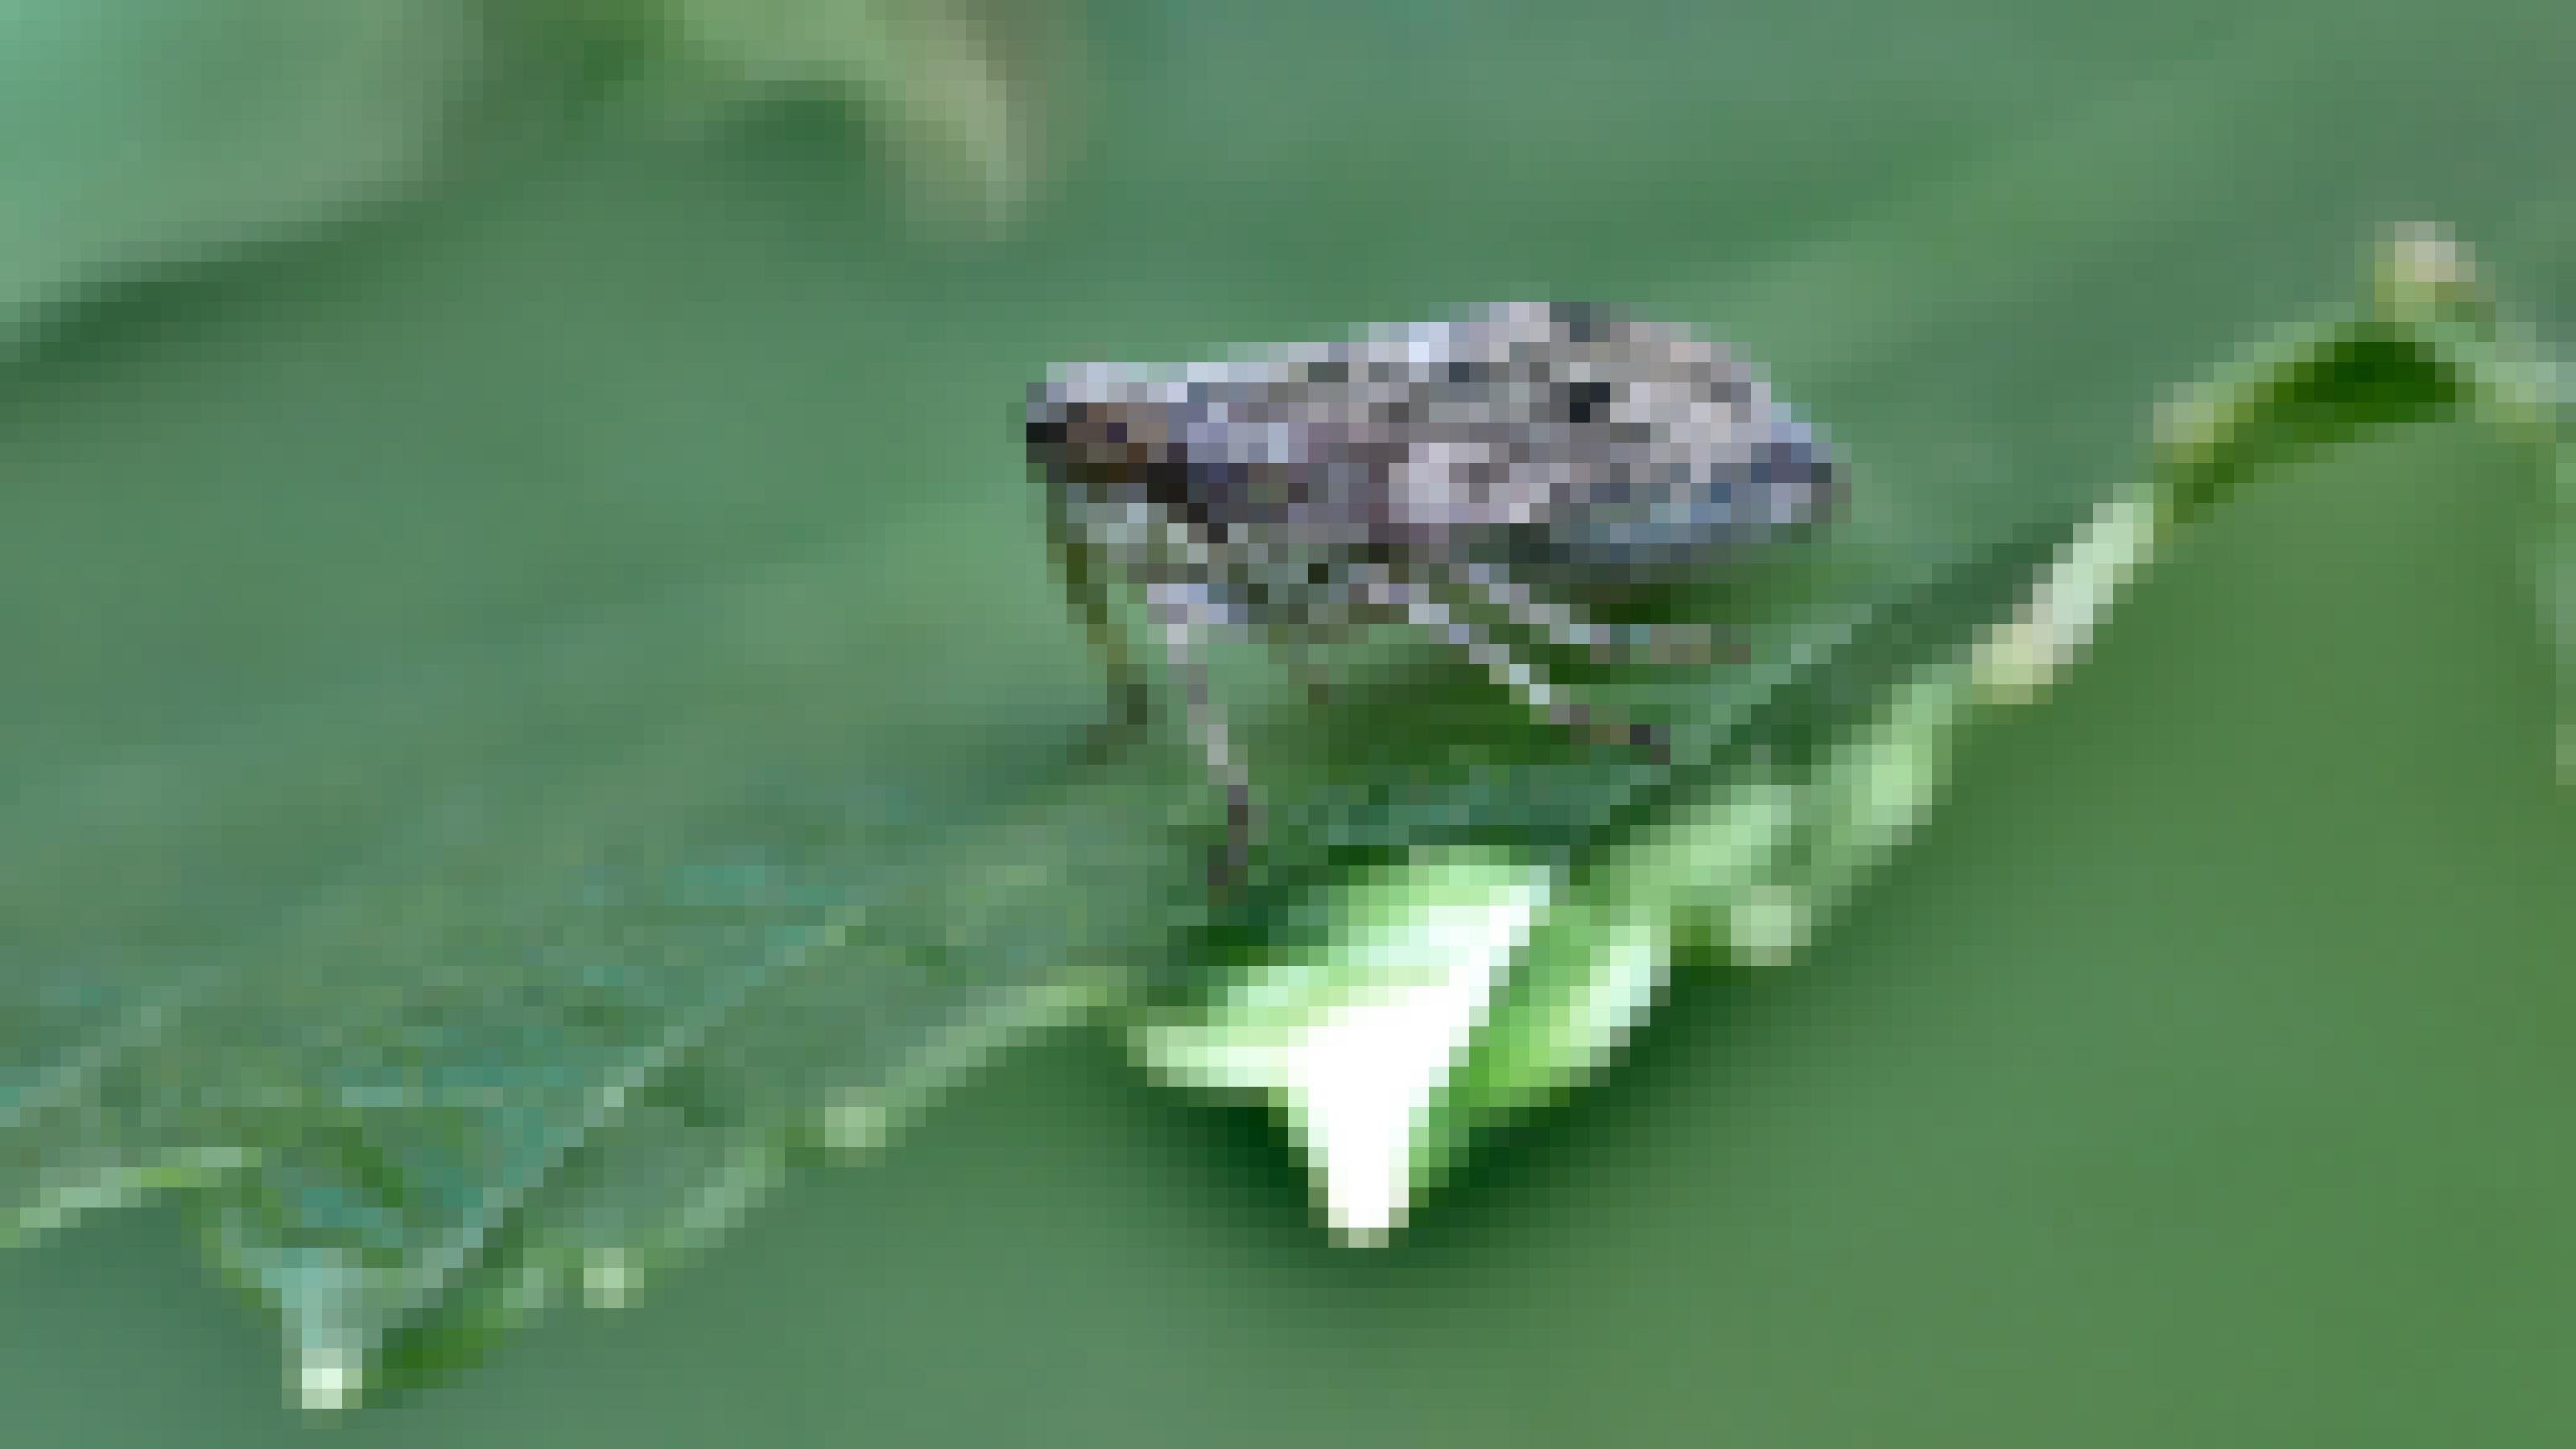 Ein beigefarbenes, dunkelbraun gezeichnetes Insekt mit braunen Augen sitzt auf einem grünen Blatt.